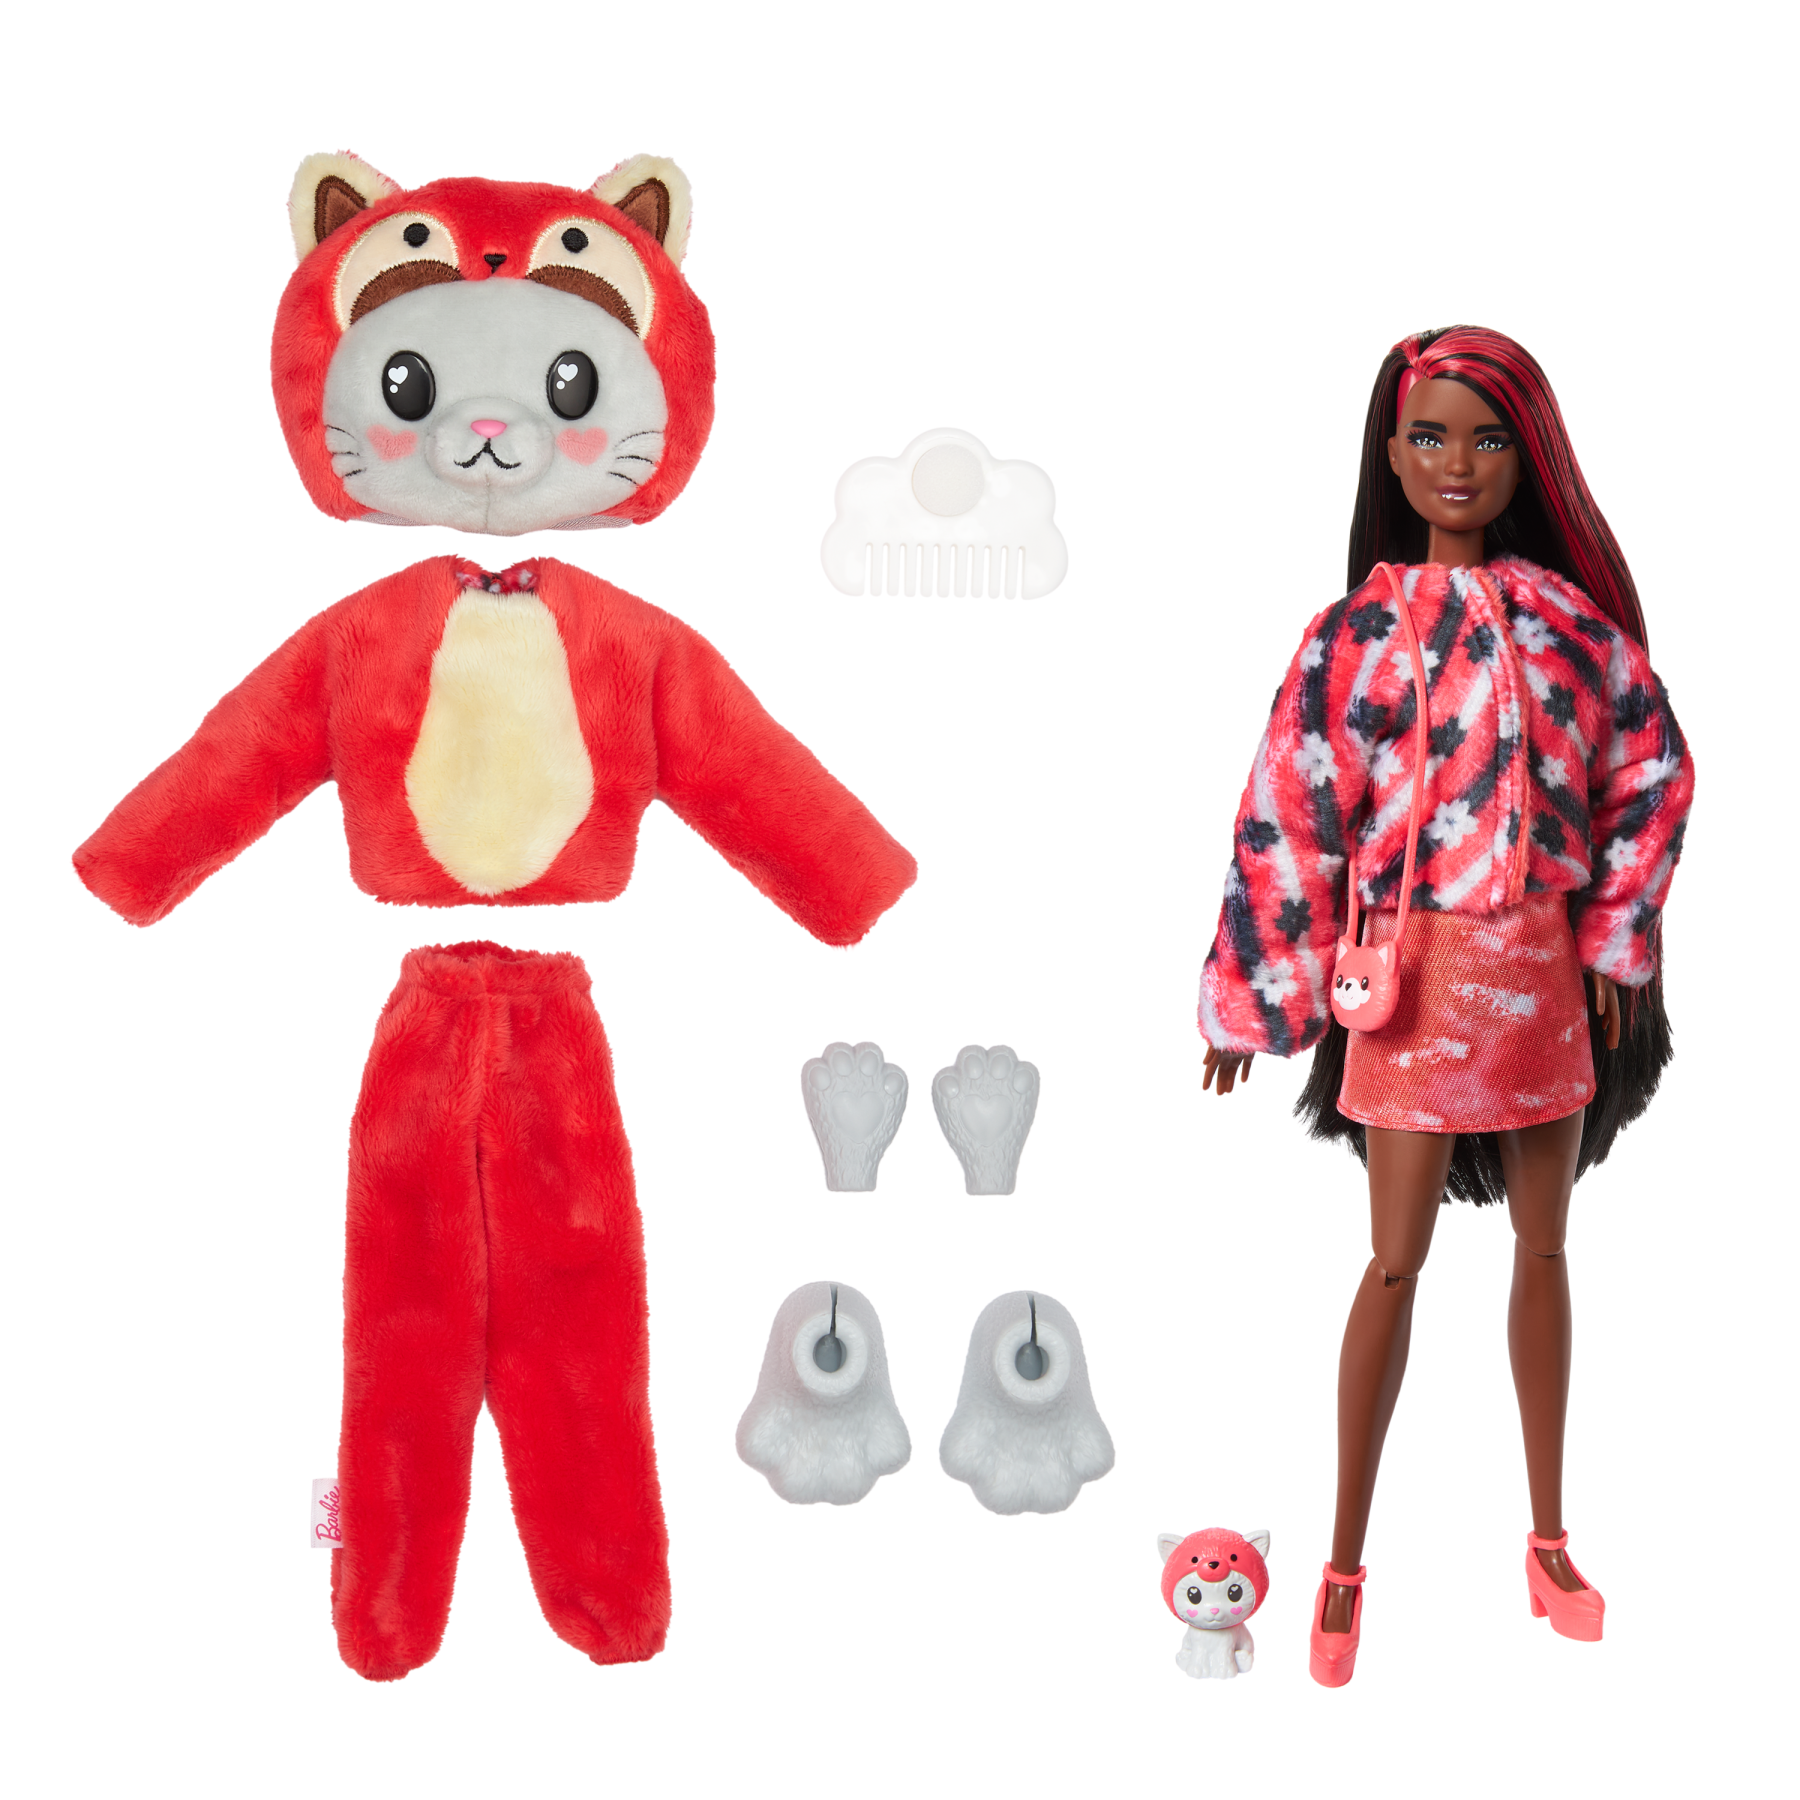 Barbie cutie reveal - bambola con costume di peluche da gattino-panda rosso e 10 accessori a sorpresa cambia colore, serie amici cuccioli - Barbie